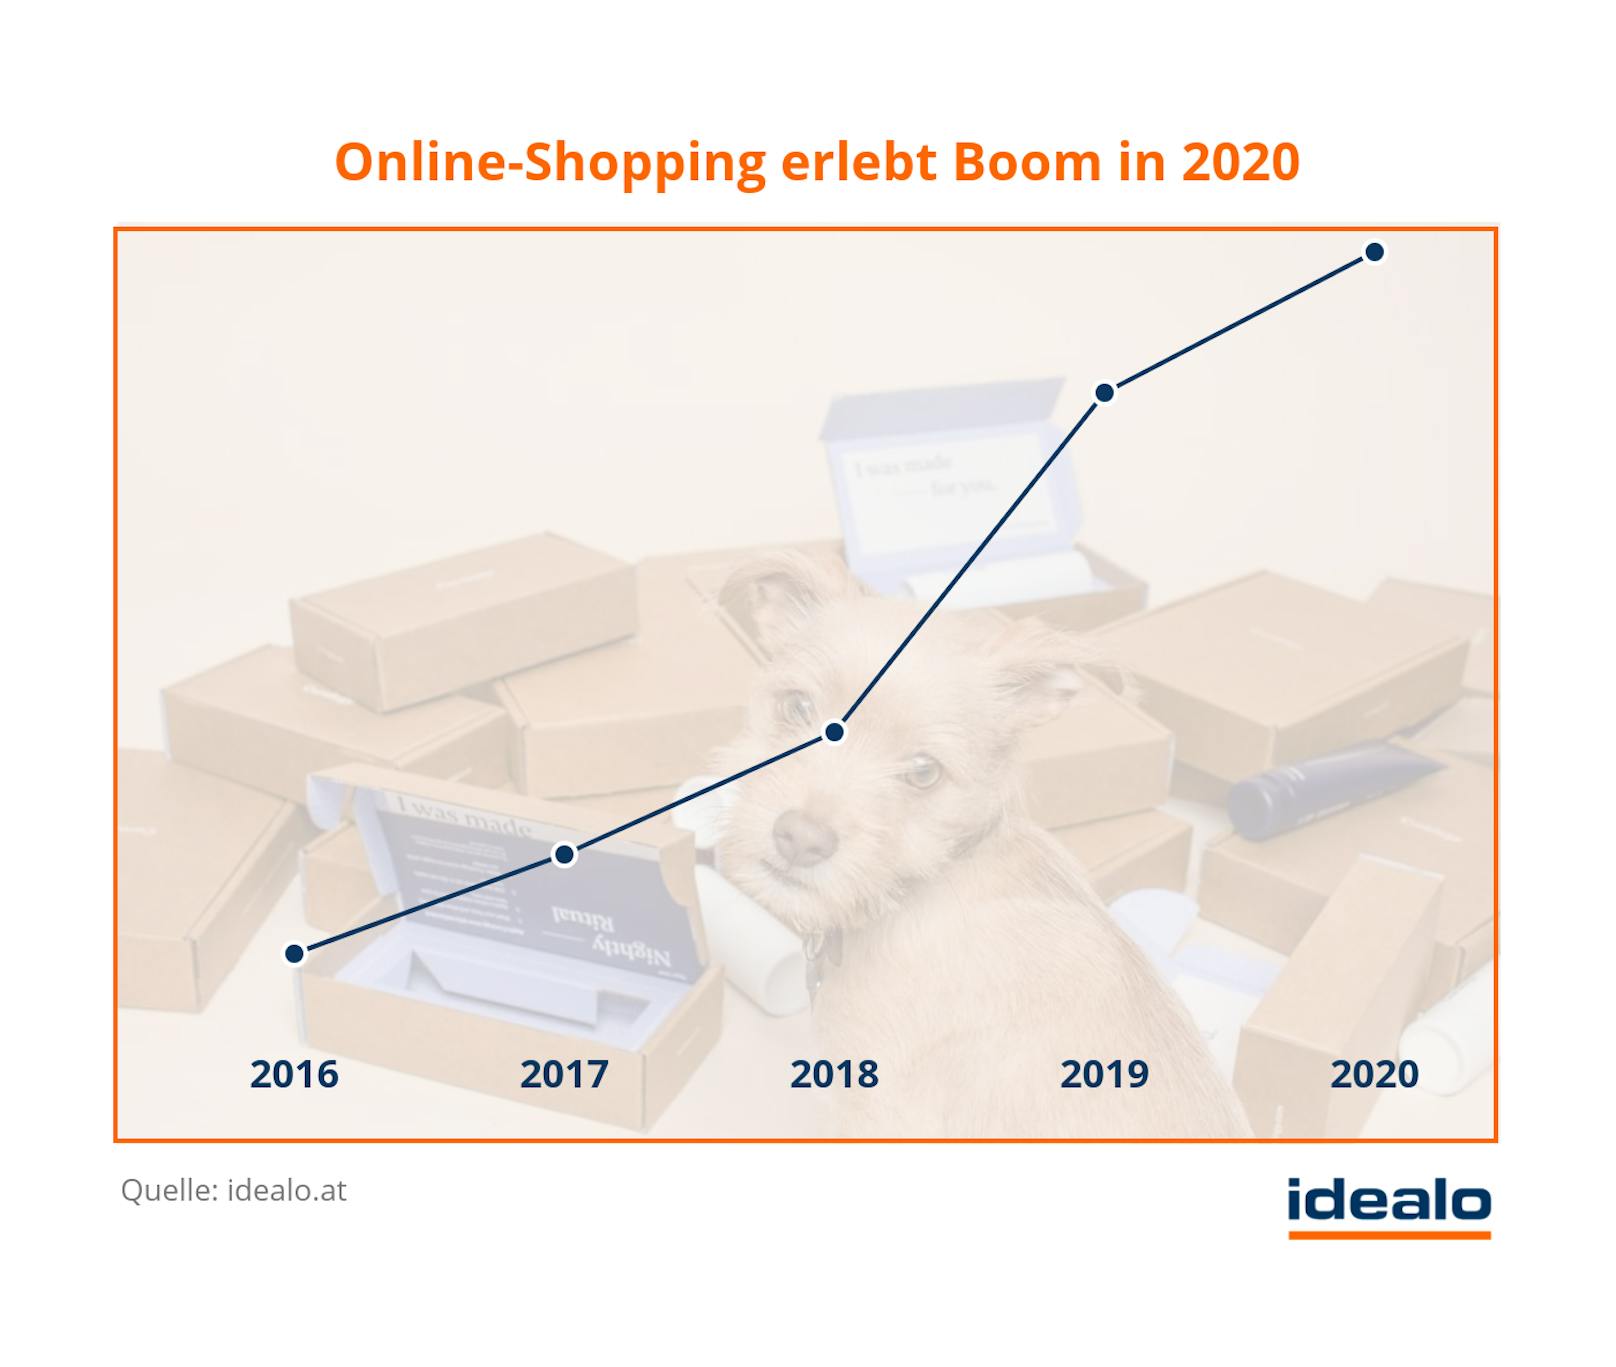 Online-Shopping erlebt in 2020 größten "Boom" aller Zeiten.